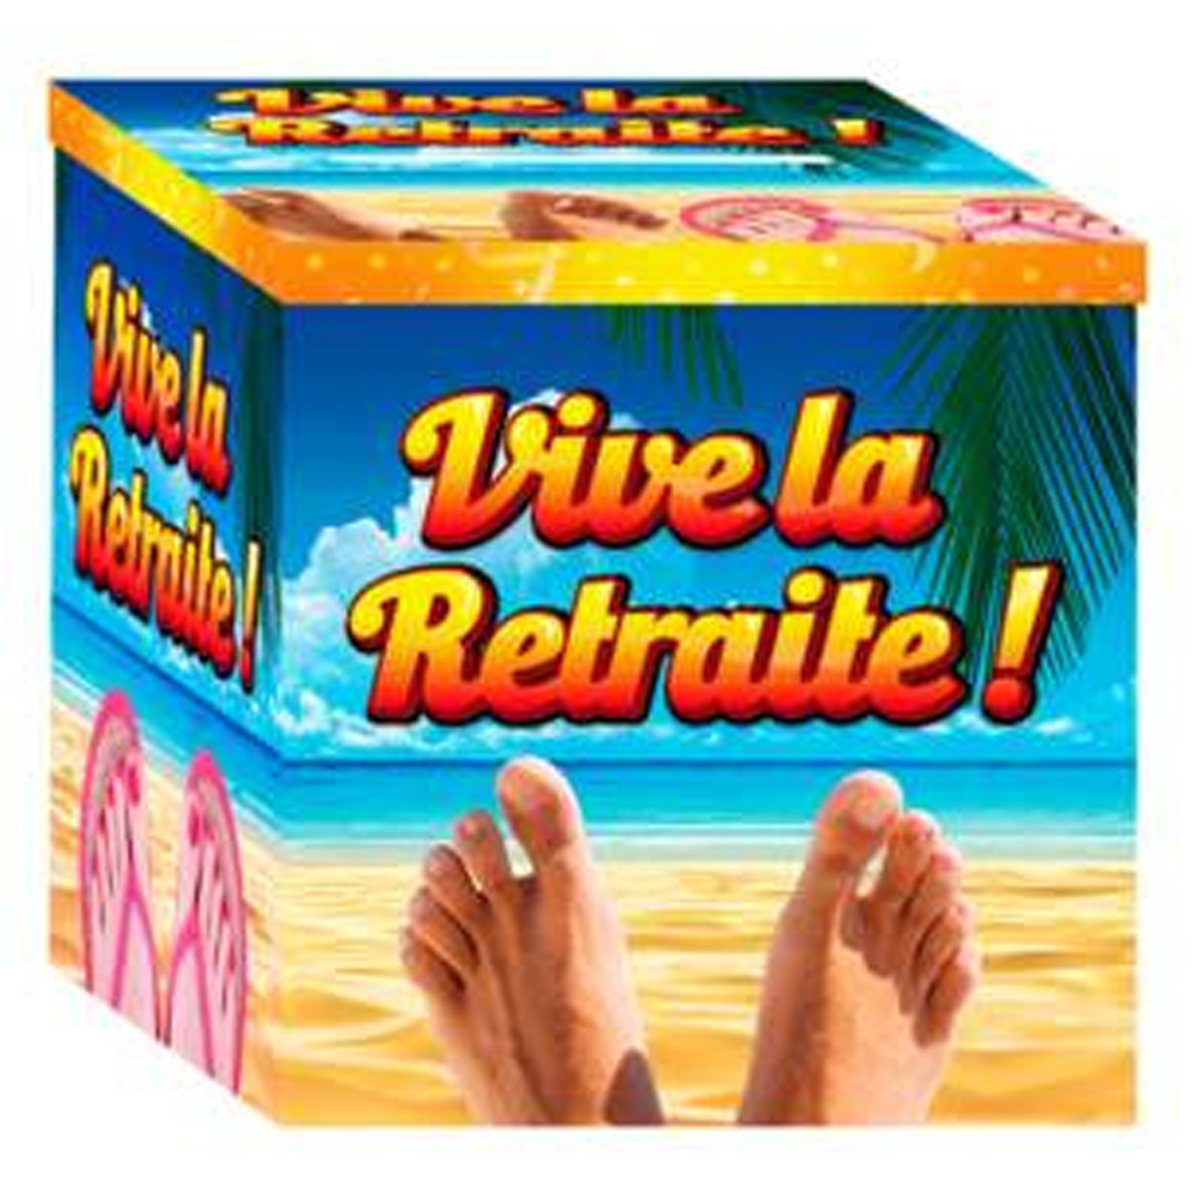 Urne cartonnée \'Vive la Retraite !\' multicolore (doigts de pieds en éventail) - 20x20 cm - [R2959]